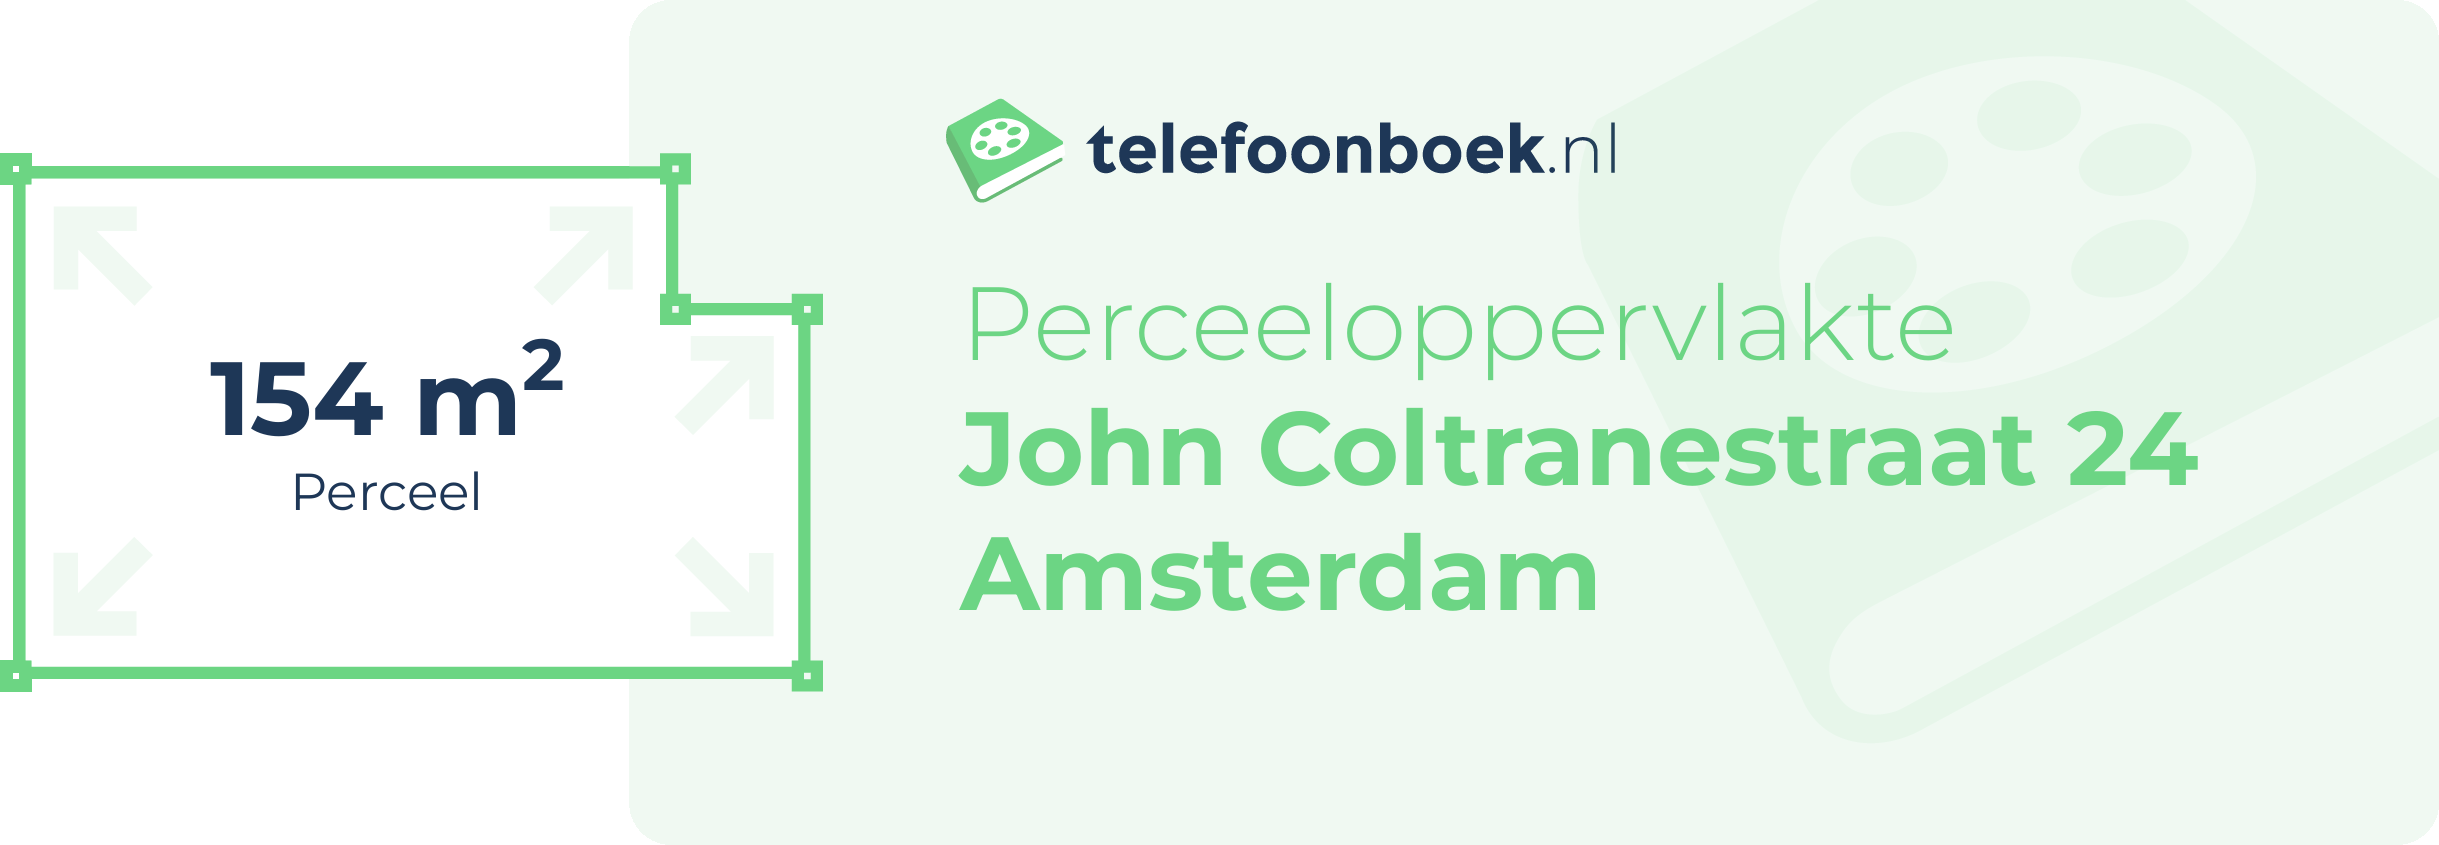 Perceeloppervlakte John Coltranestraat 24 Amsterdam